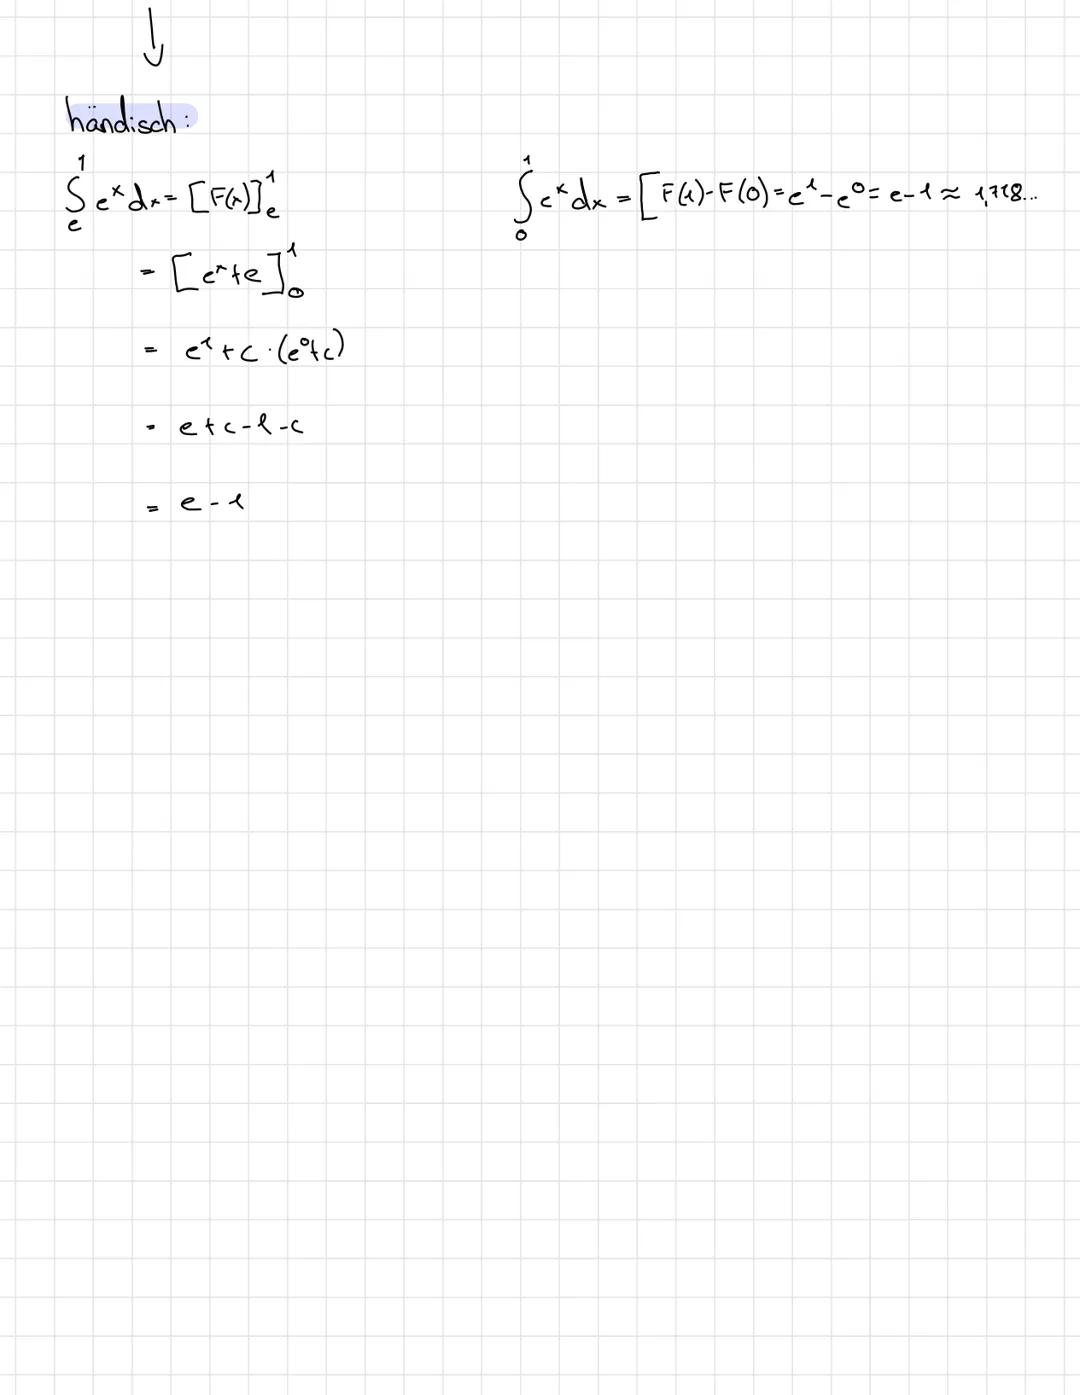 Exponentialfunktionen
Eigenschaften:
Für jede Exponentialfunktion mit y=b^x mit b>0 gilt:
- Graph verläuft oberhalb der x-Achse und durch de